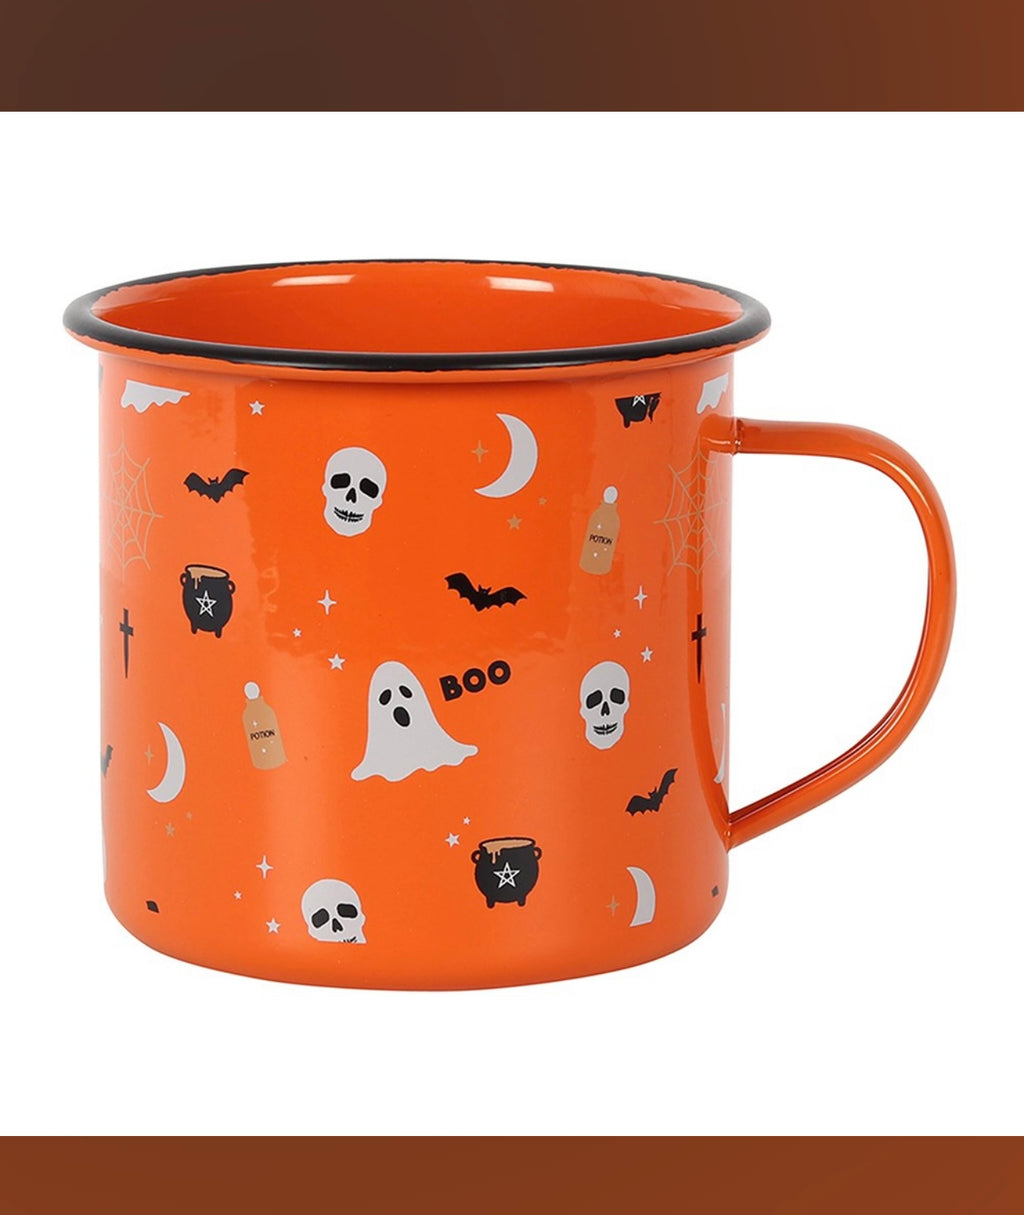 Vintage style orange Halloween enamel mug